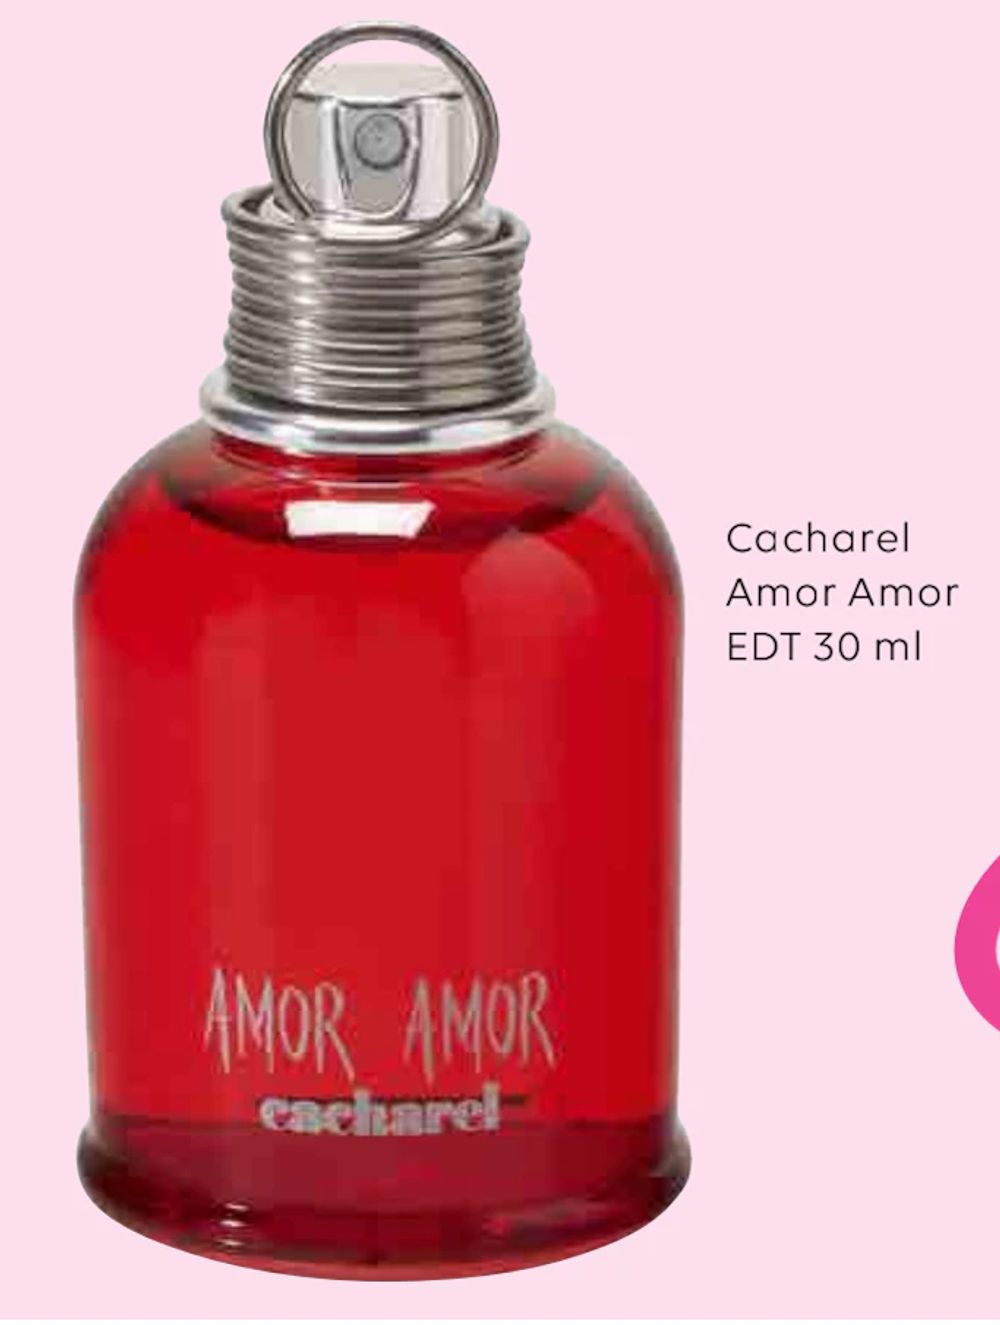 Tilbud på Cacharel Amor Amor EDT 30 ml fra Scandlines Travel Shop til 159 kr.